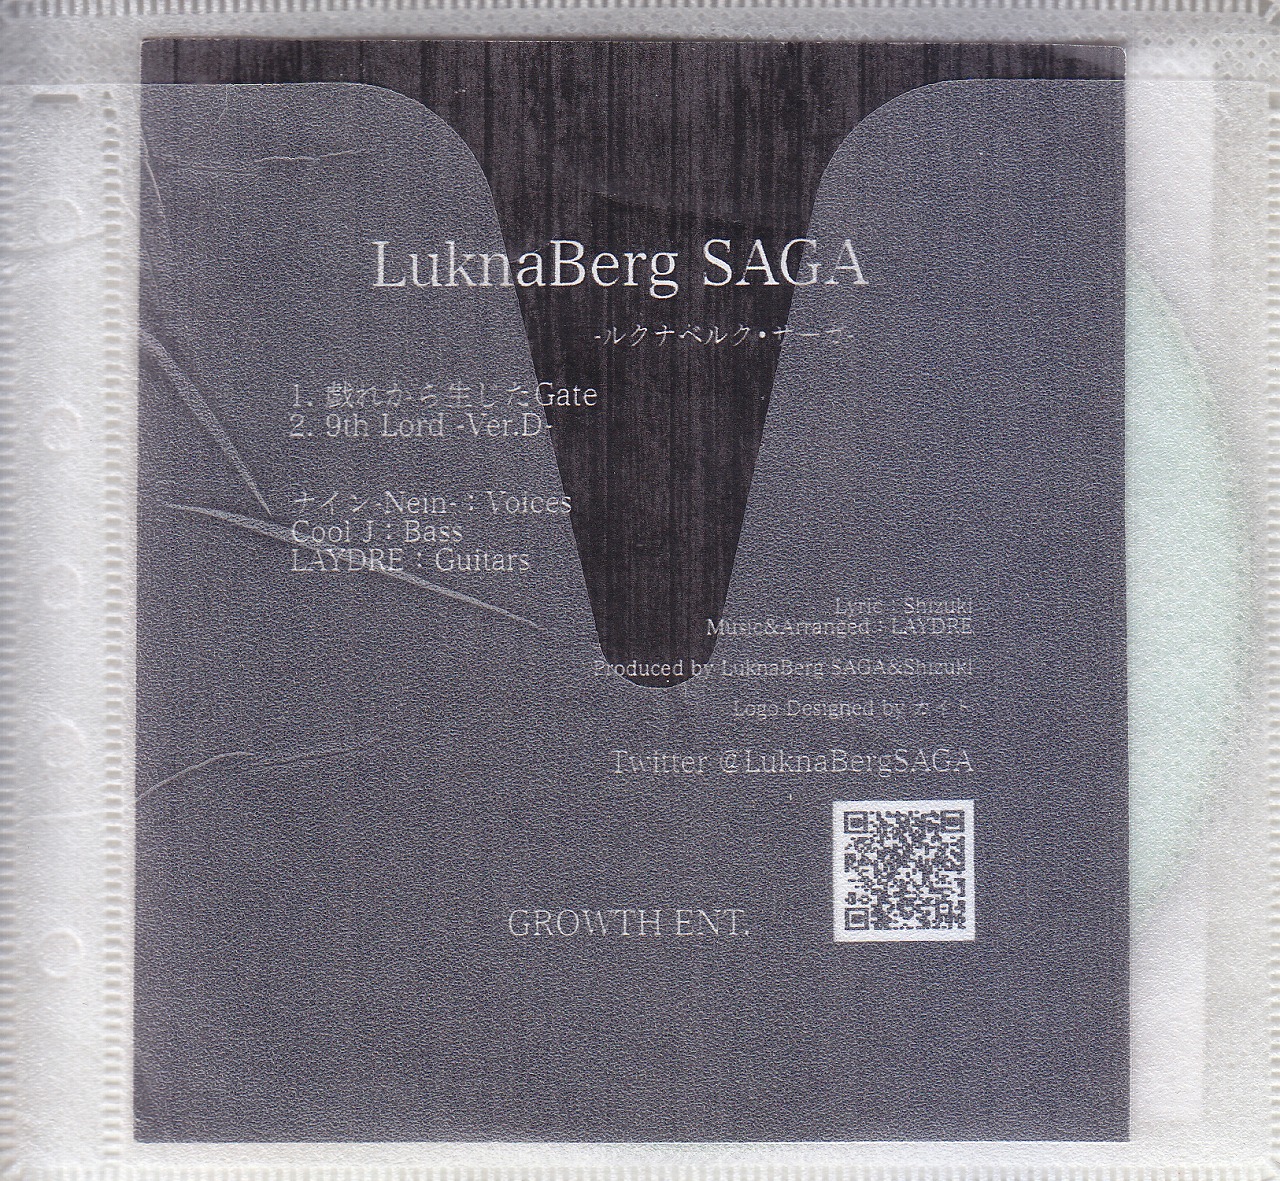 LuknaBerg SAGA ( ルクナベルクサーガ )  の CD LuknaBerg SAGA